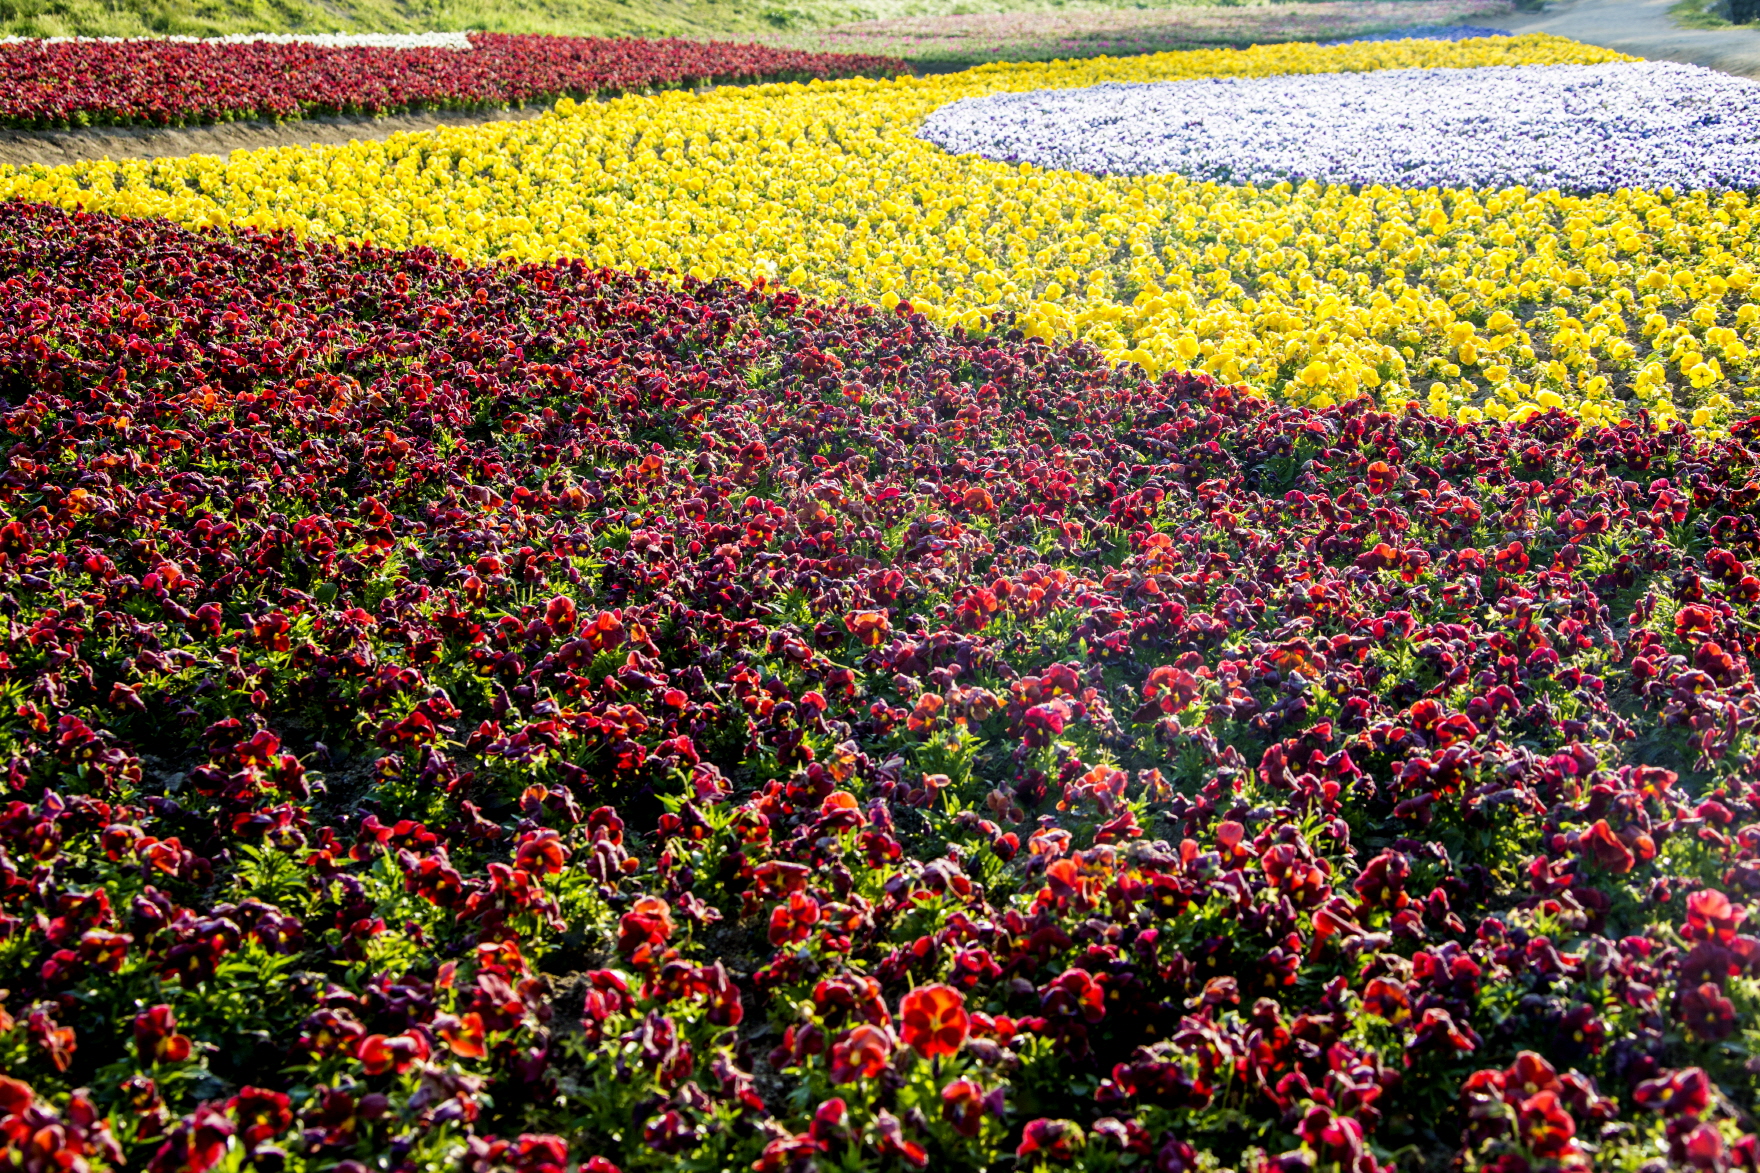 가운데 흰색, 그다음 노란색, 그다음 검붉은색으로 둘러쌓여 있는 꽃밭